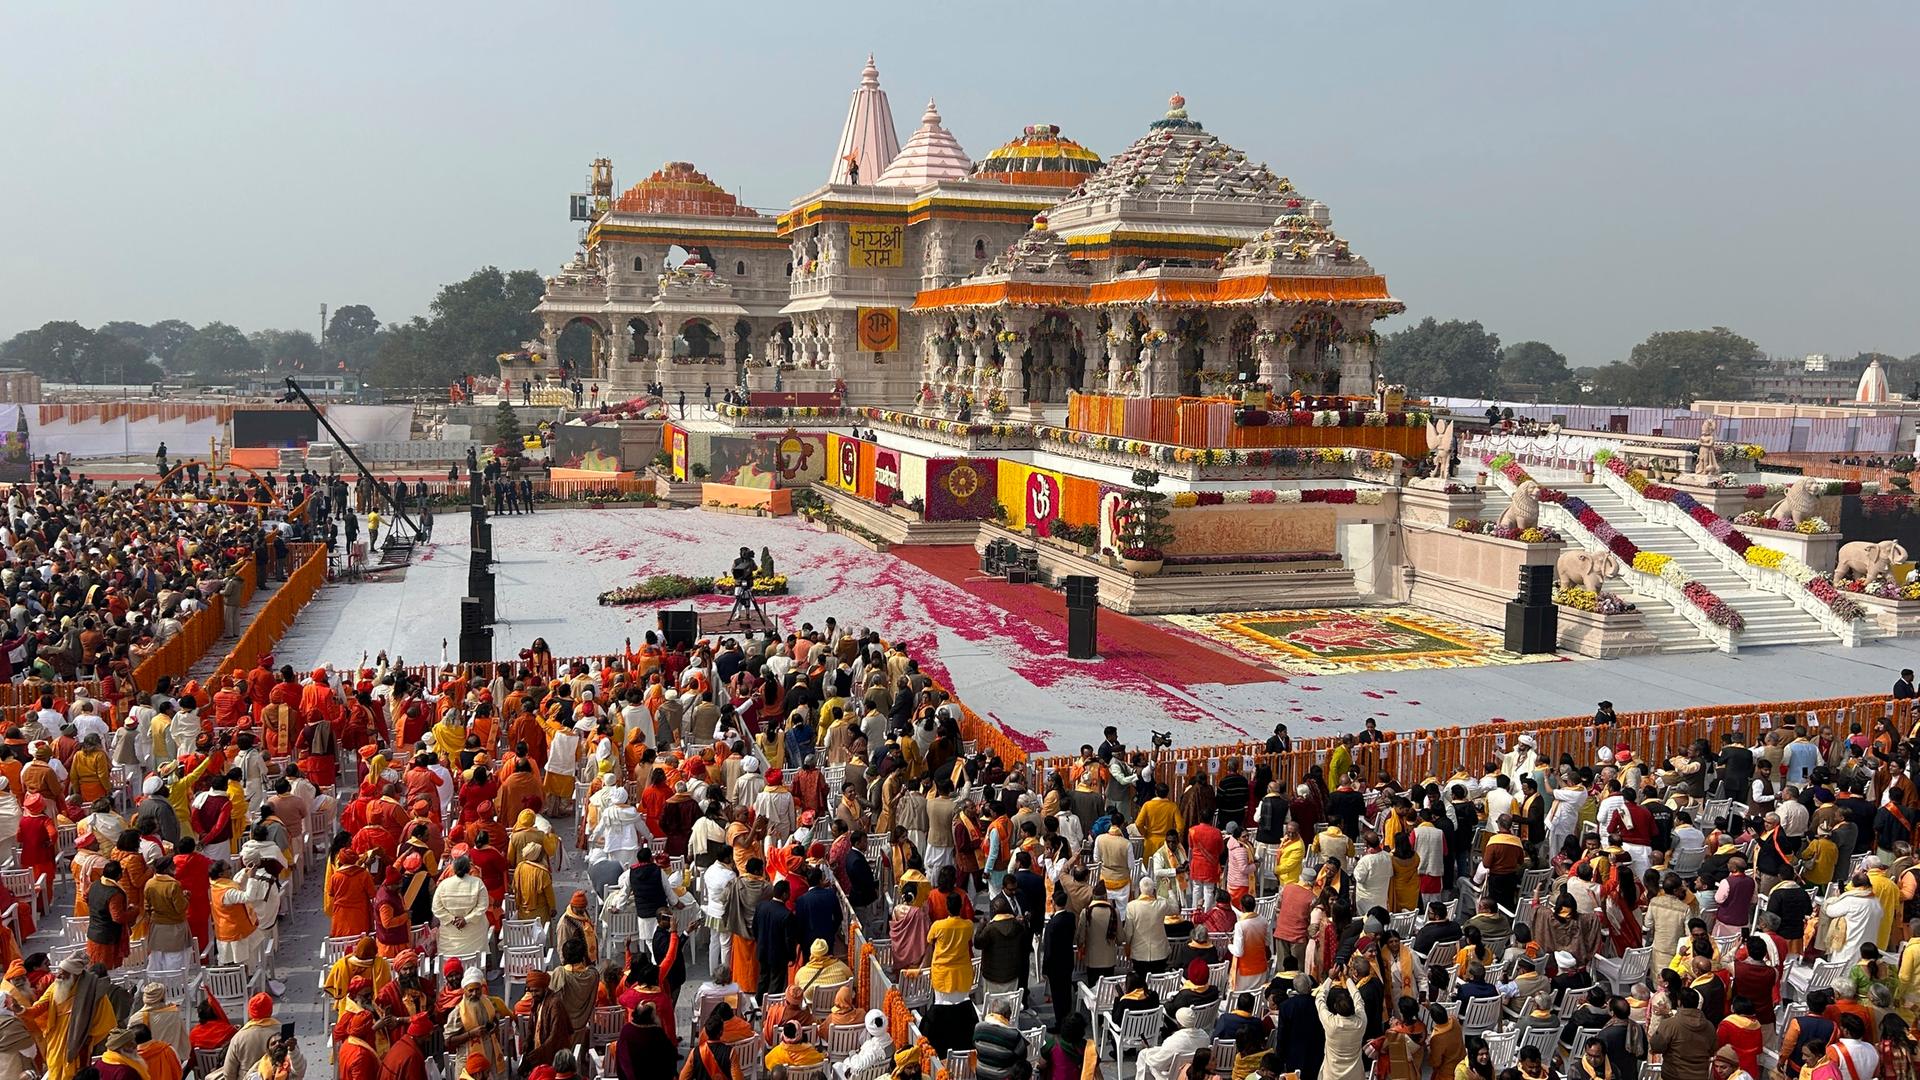 Indien, Ayodhya: Ein Blick auf das Publikum während der Eröffnung eines Tempels, der der Hindu-Gottheit Lord Ram gewidmet ist, in Ayodhya, Indien.